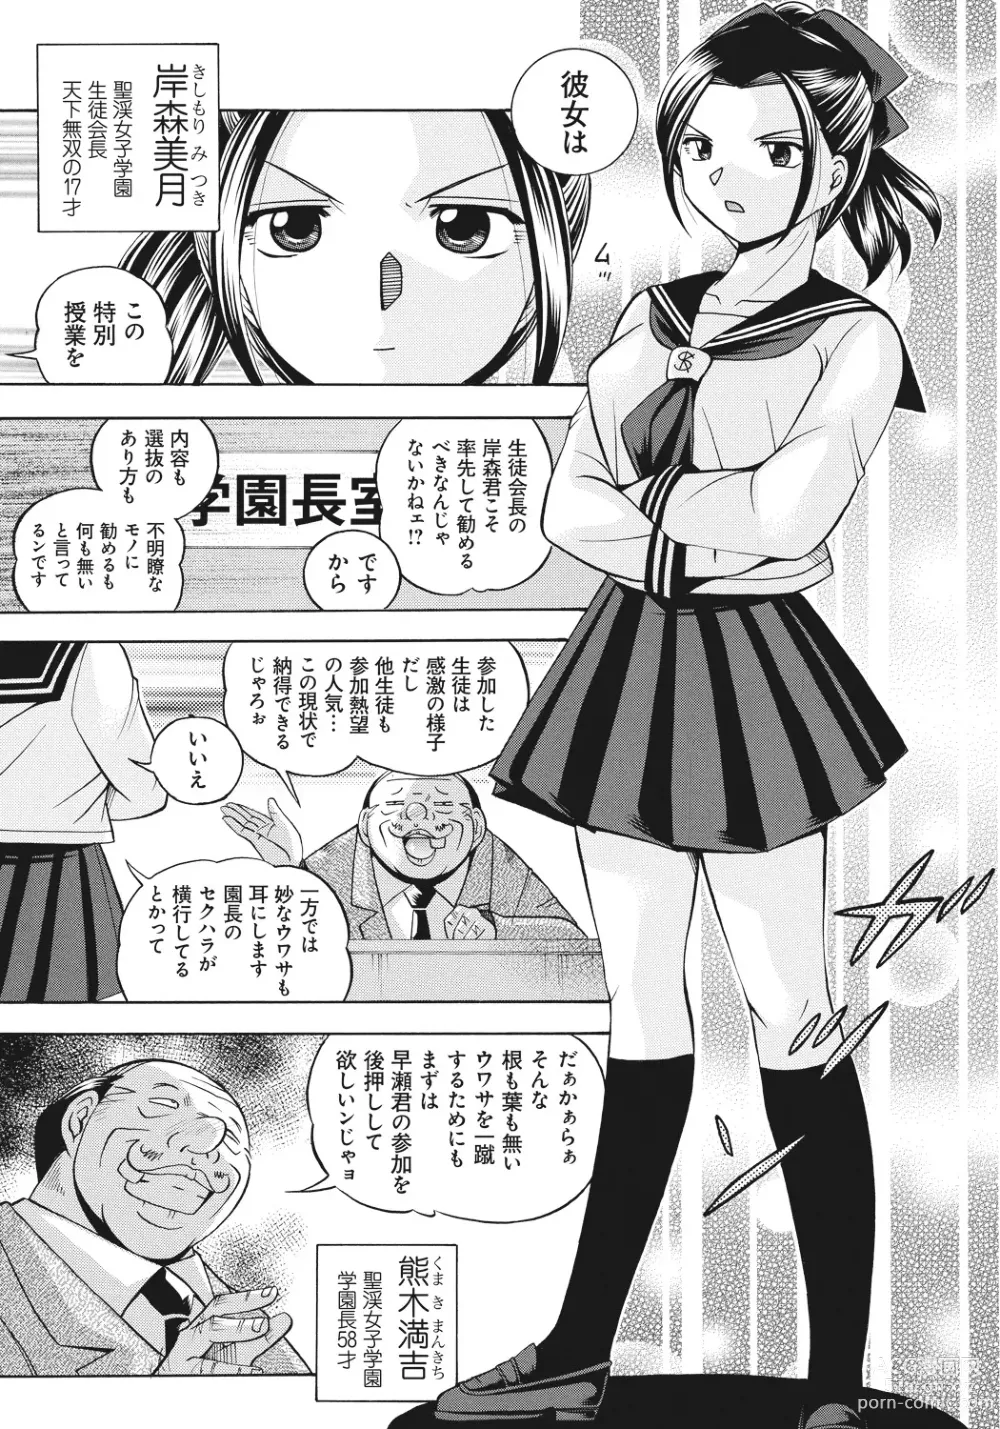 Page 8 of manga Student Council President Mitsuki